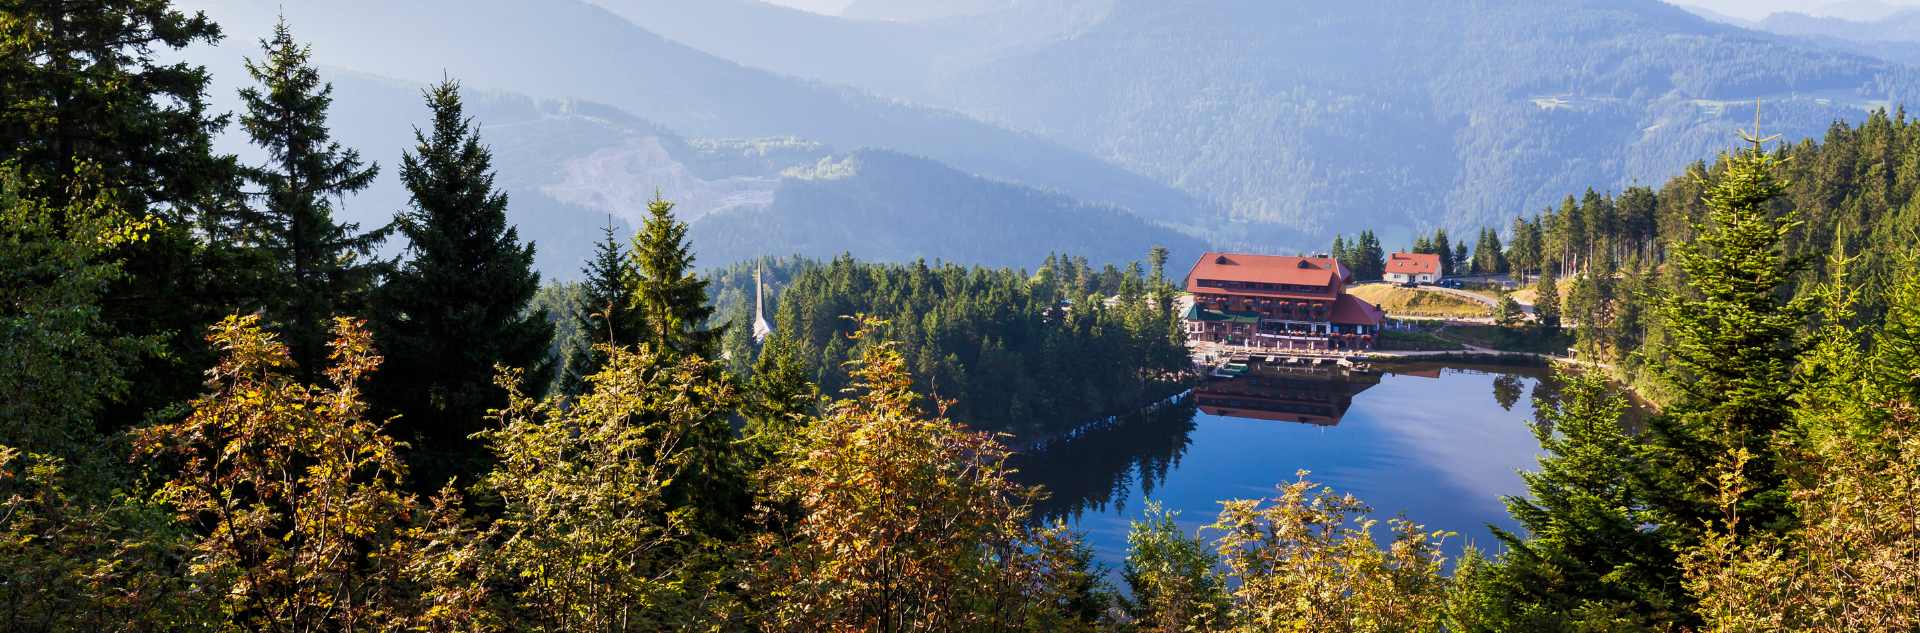 Hotel am Mummelsee im Schwarzwald